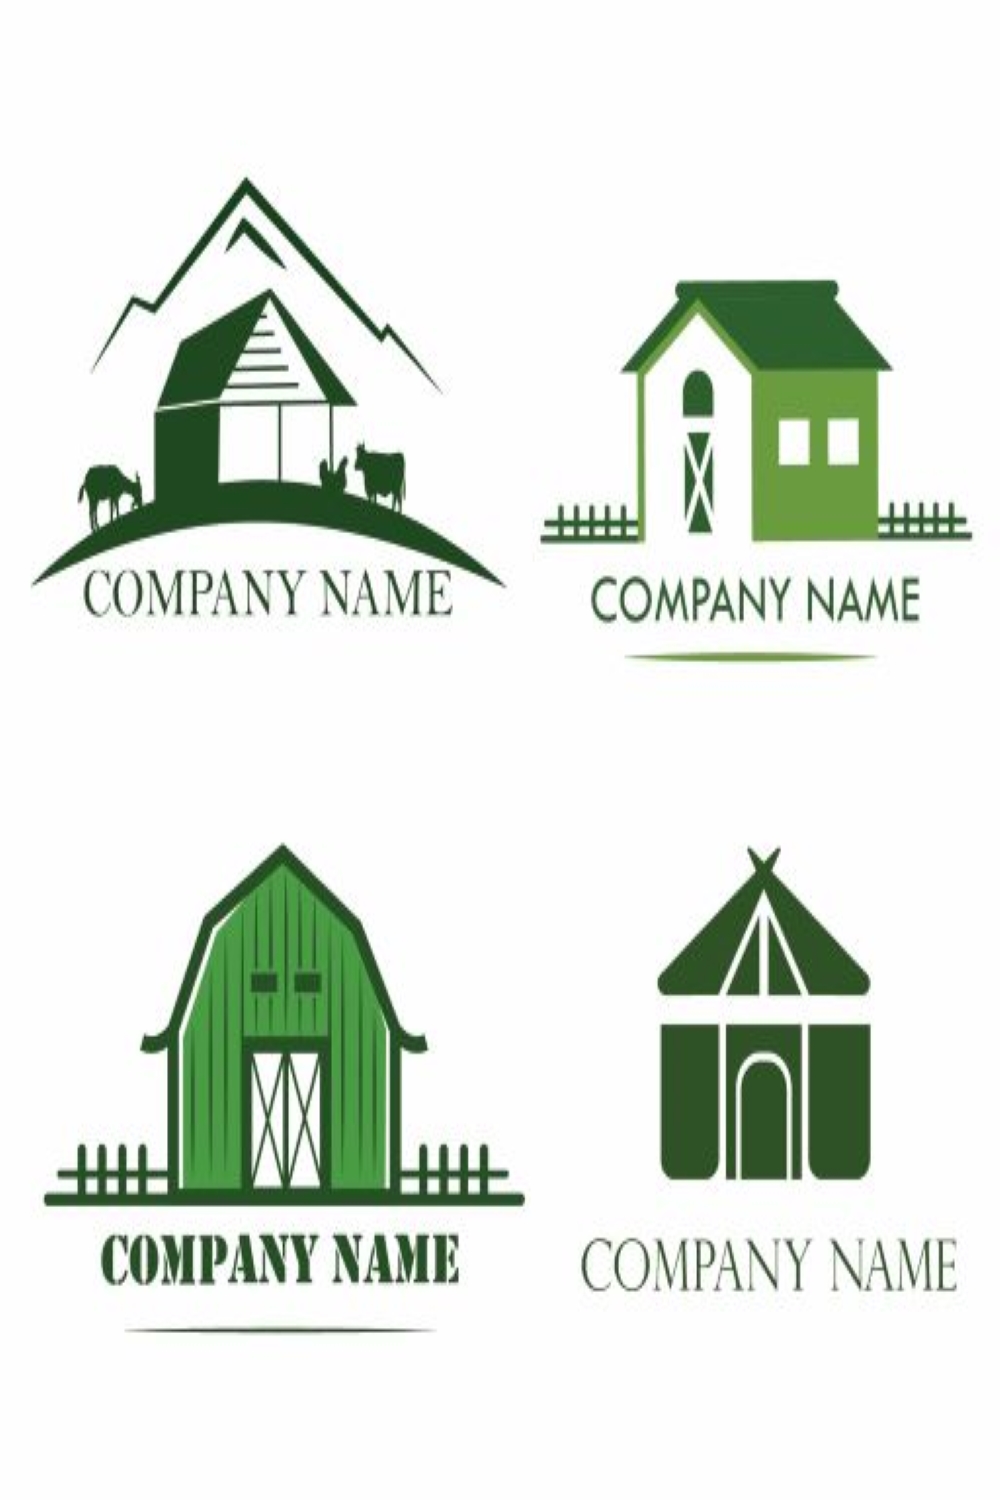 Farmhouse Logos Pinterest collage image.